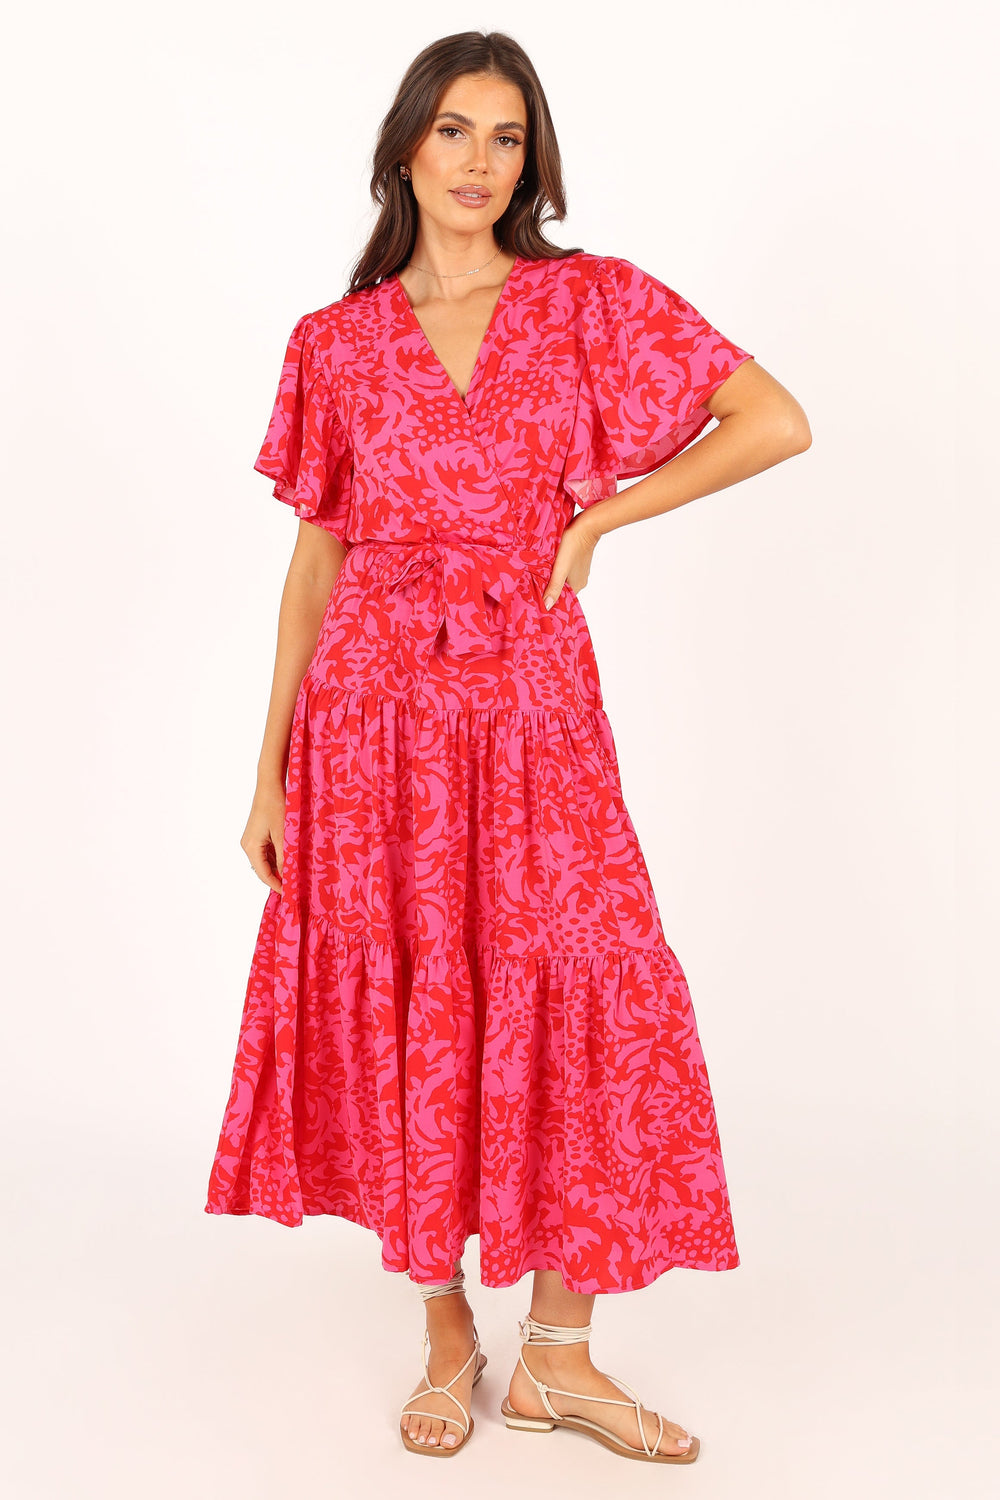 Barker Dress - Pink Red Floral - Petal & Pup